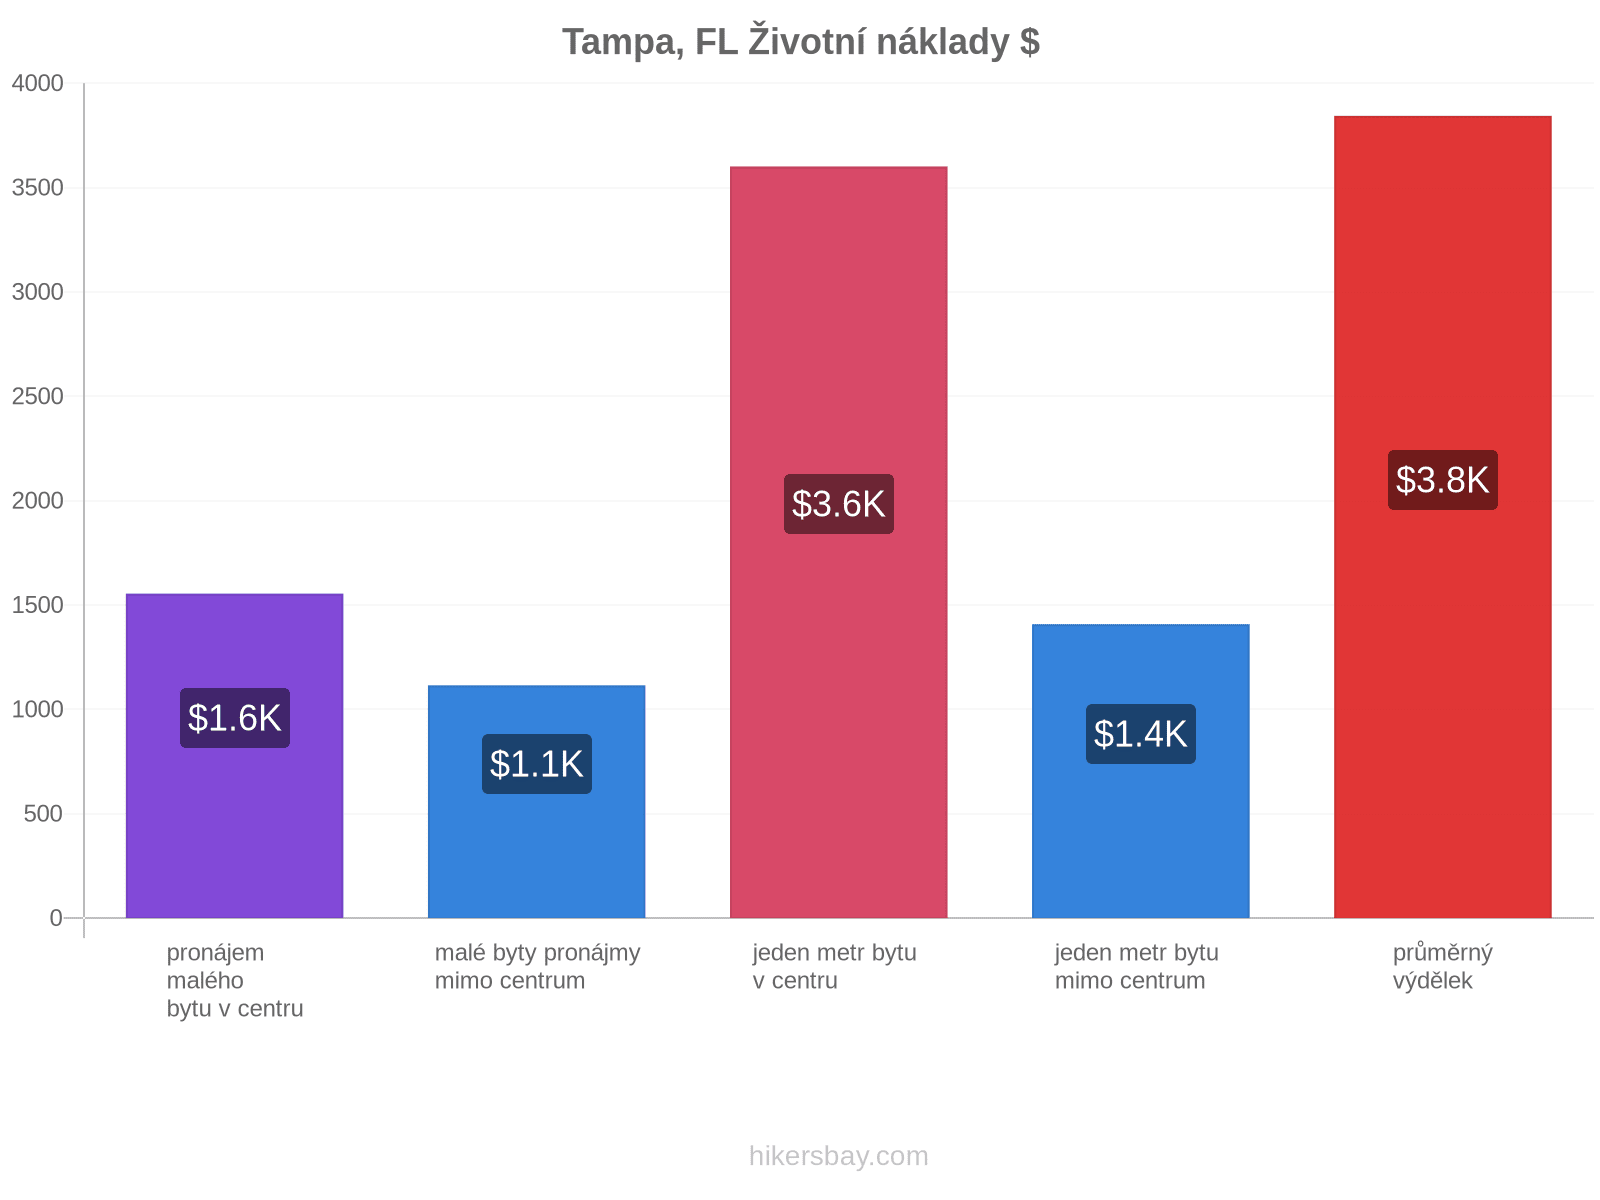 Tampa, FL životní náklady hikersbay.com